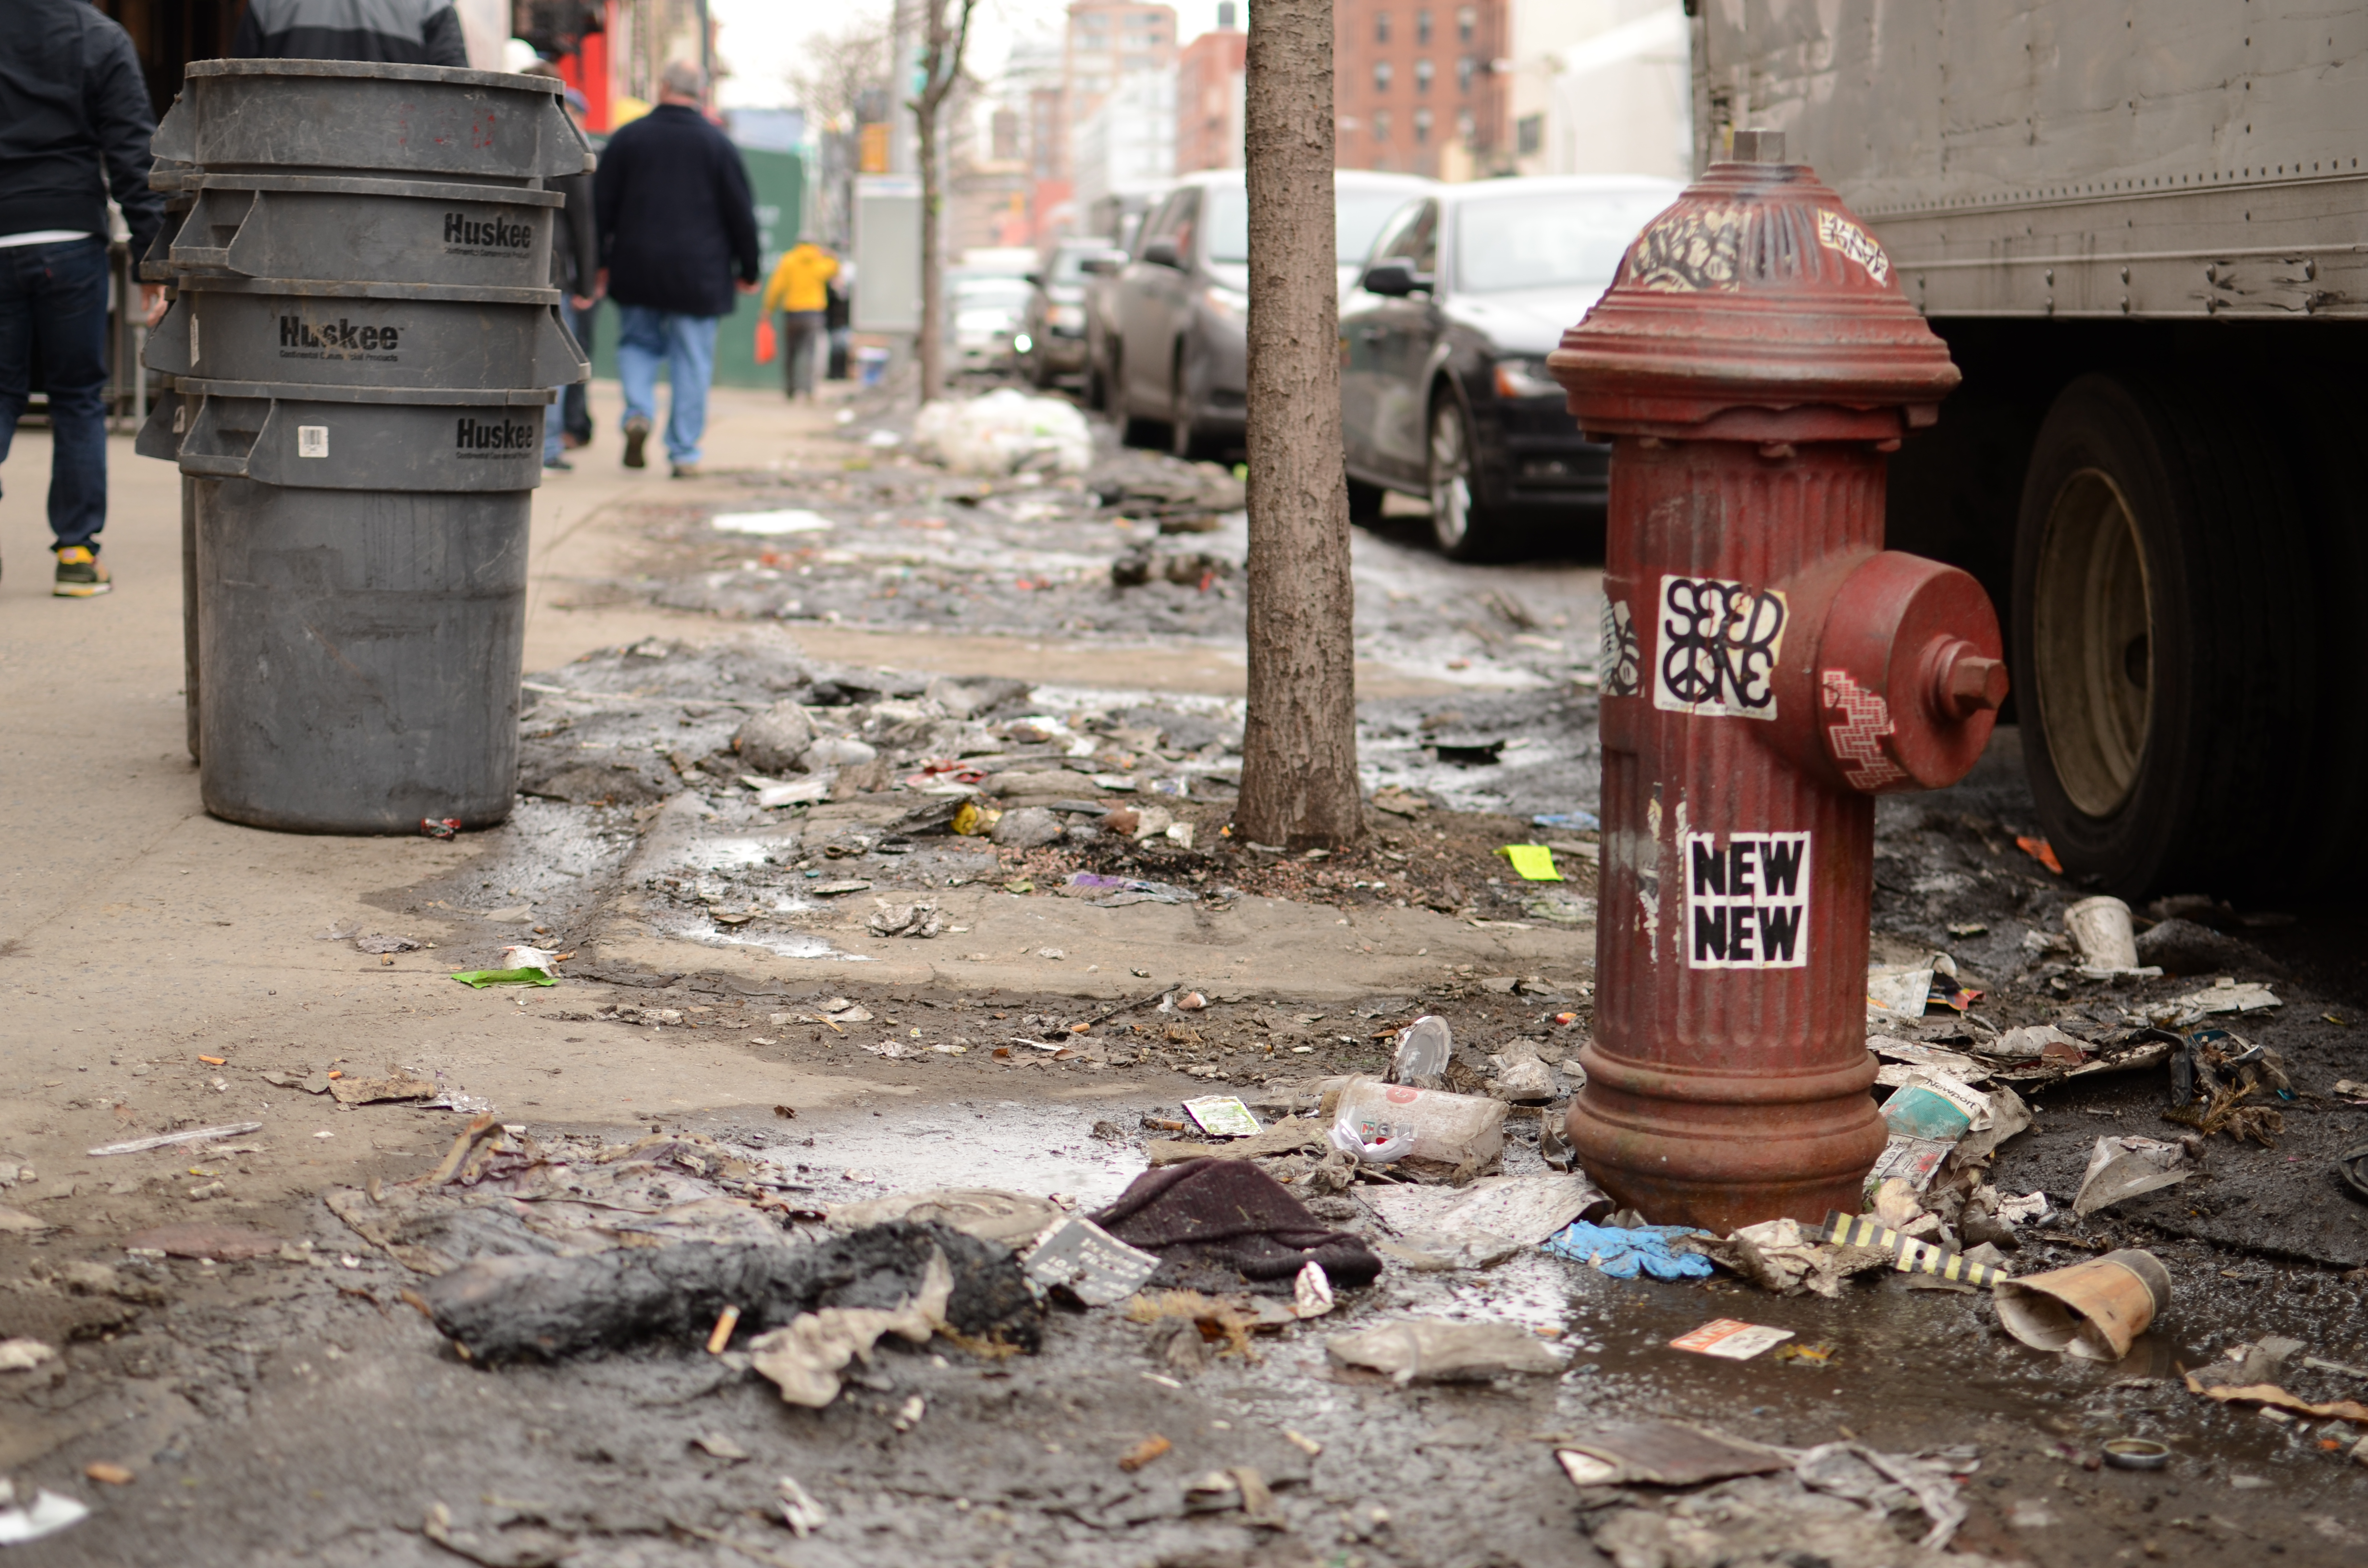 File:Litter New York City.JPG - Wikimedia Commons